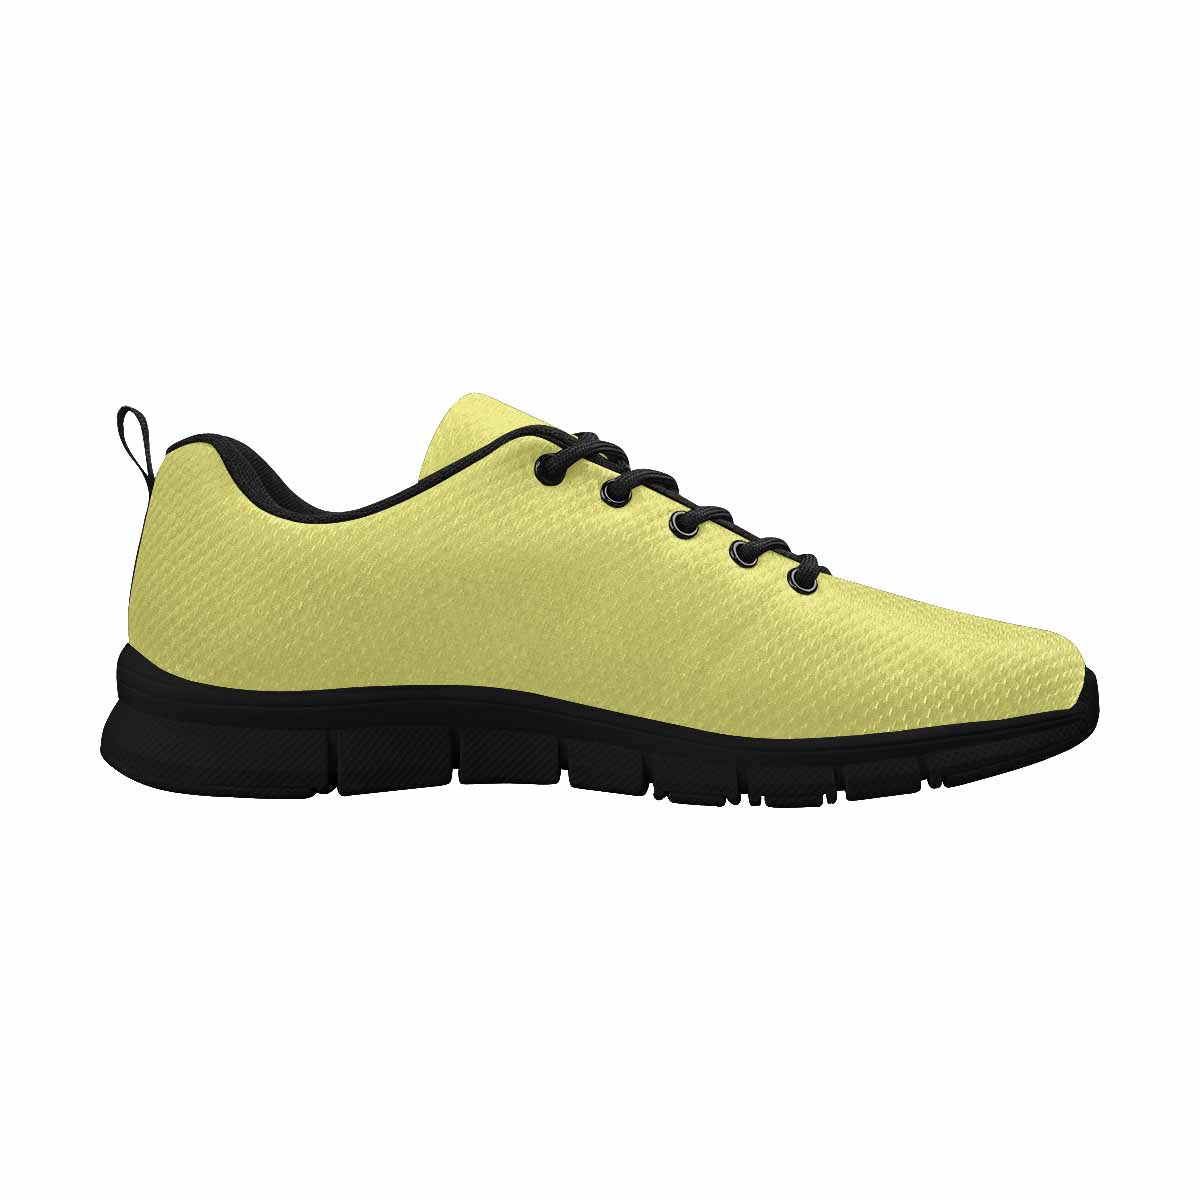 Sneakers For Men,    Honeysuckle Yellow   - Running Shoes